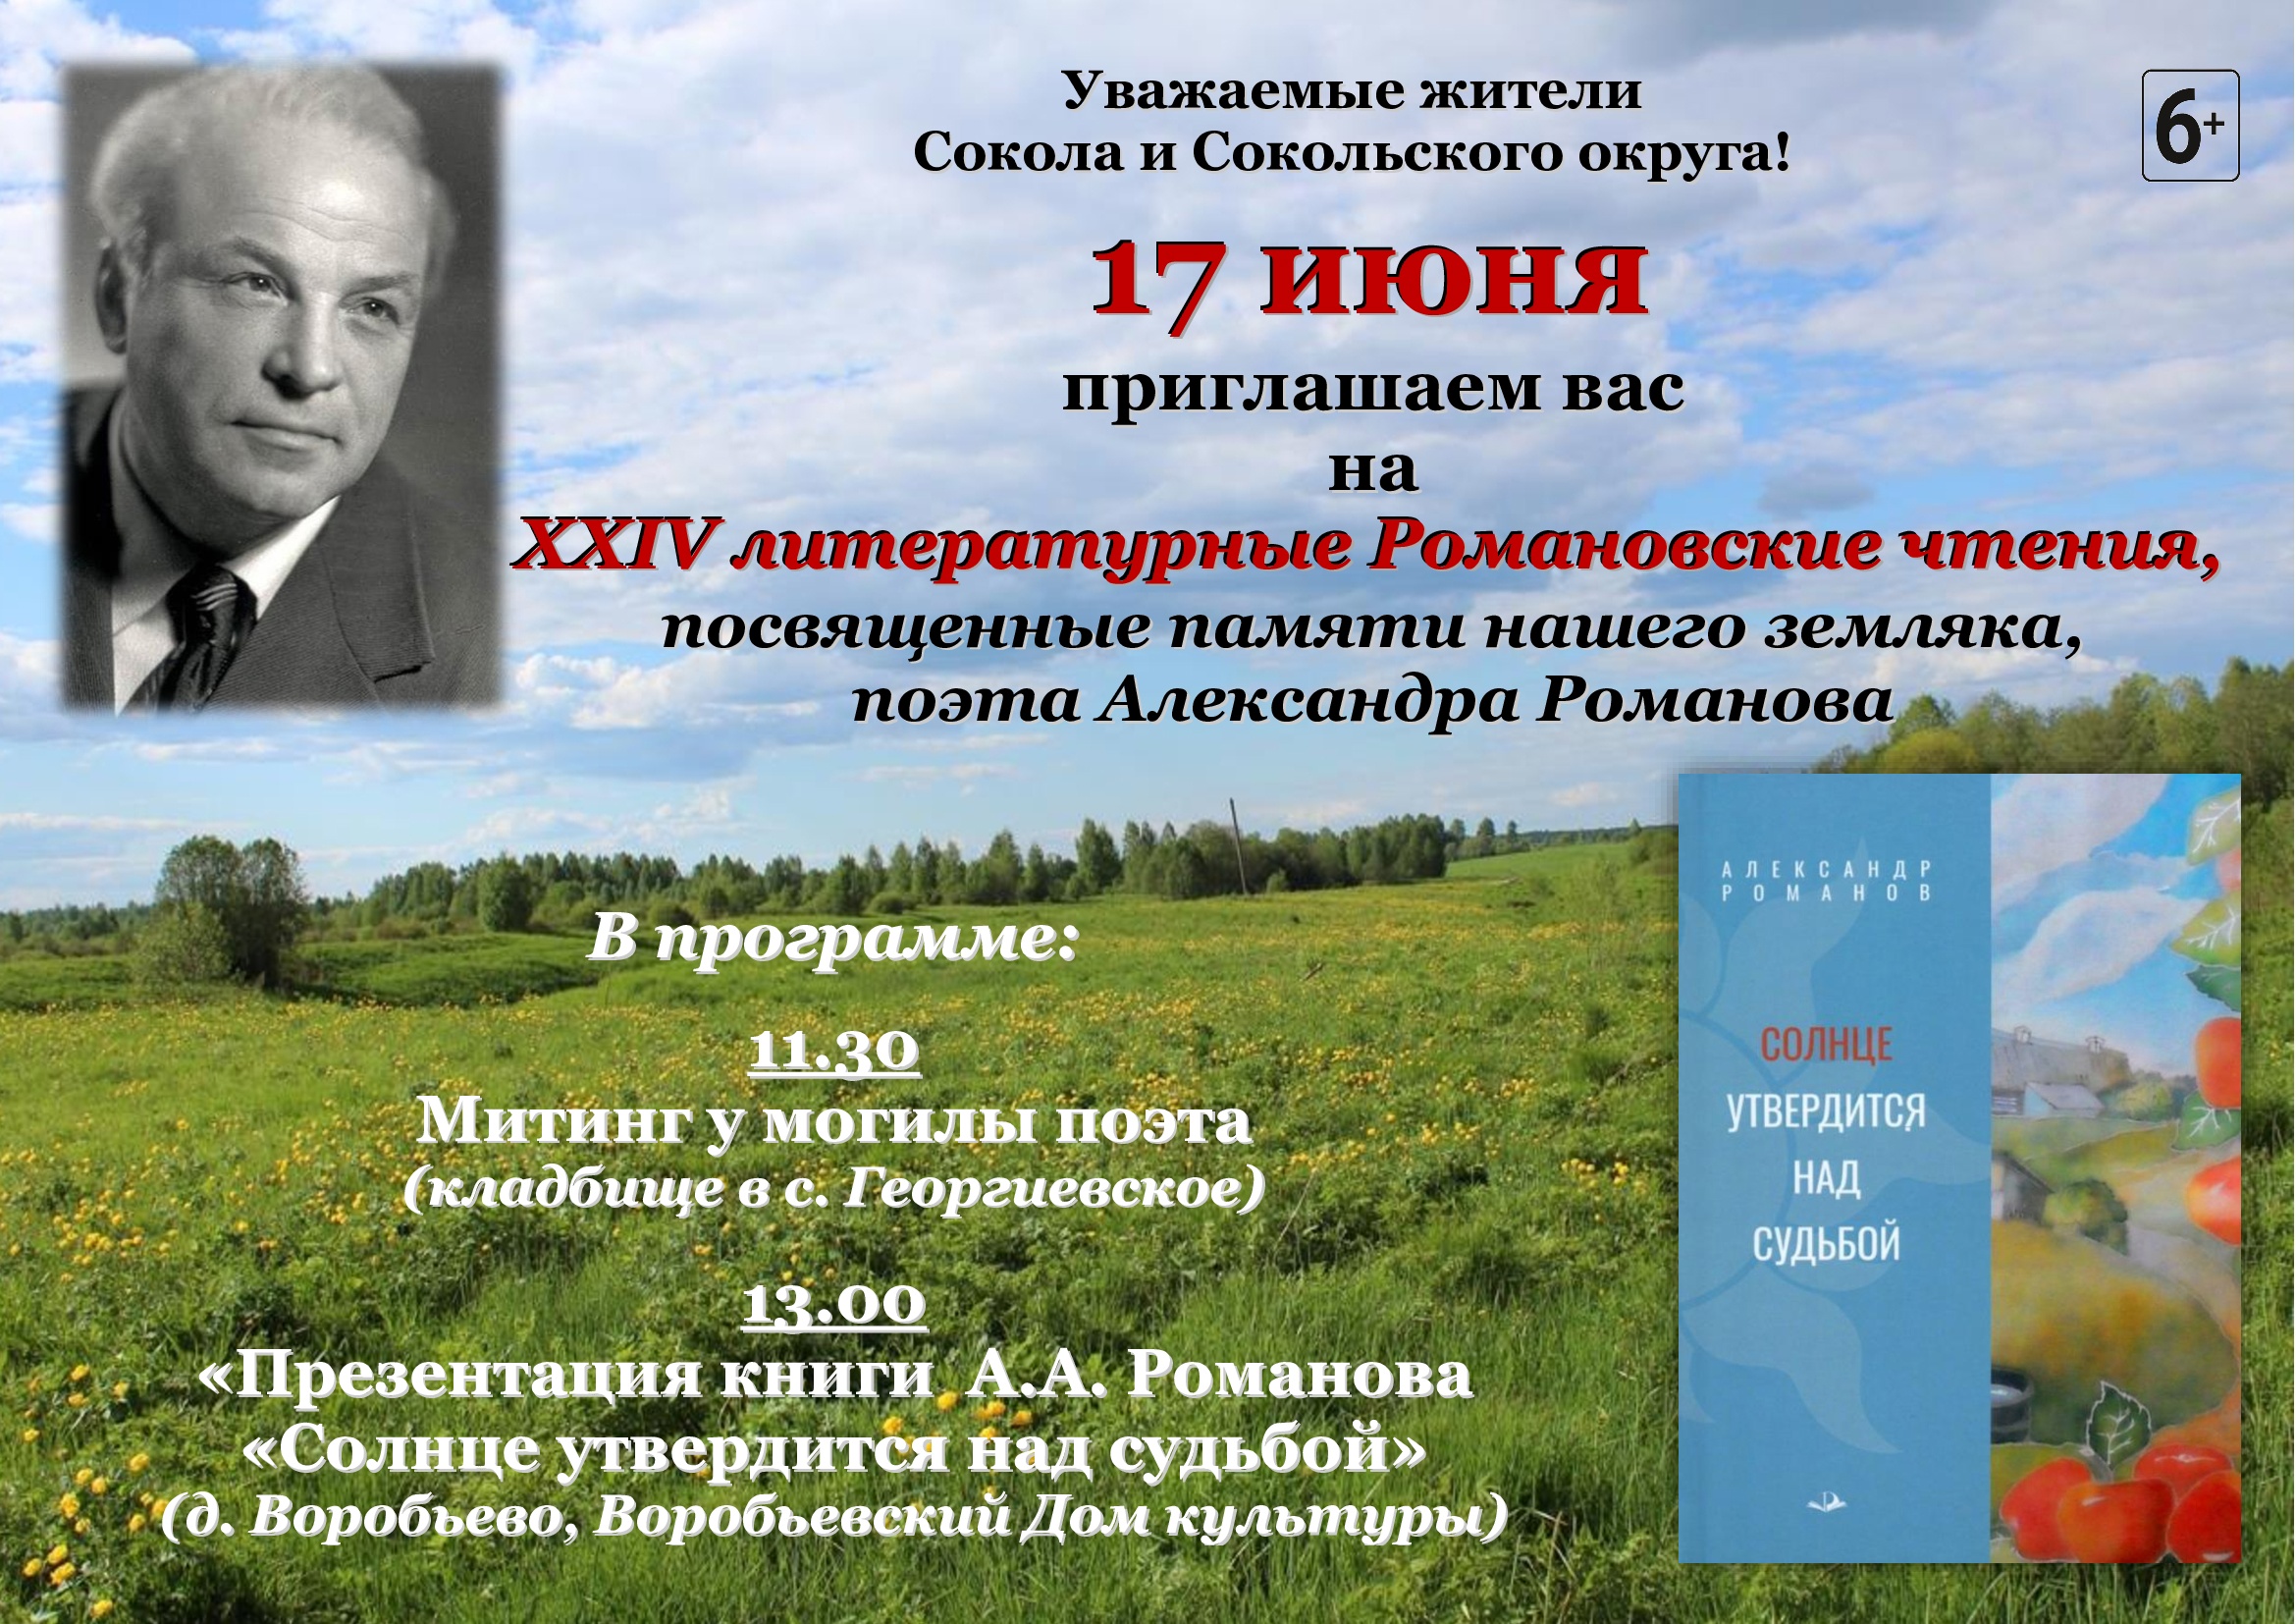 XXIV Романовские чтения, посвященные памяти нашего земляка, поэта Александра Романова, пройдут в Сокольском округе.